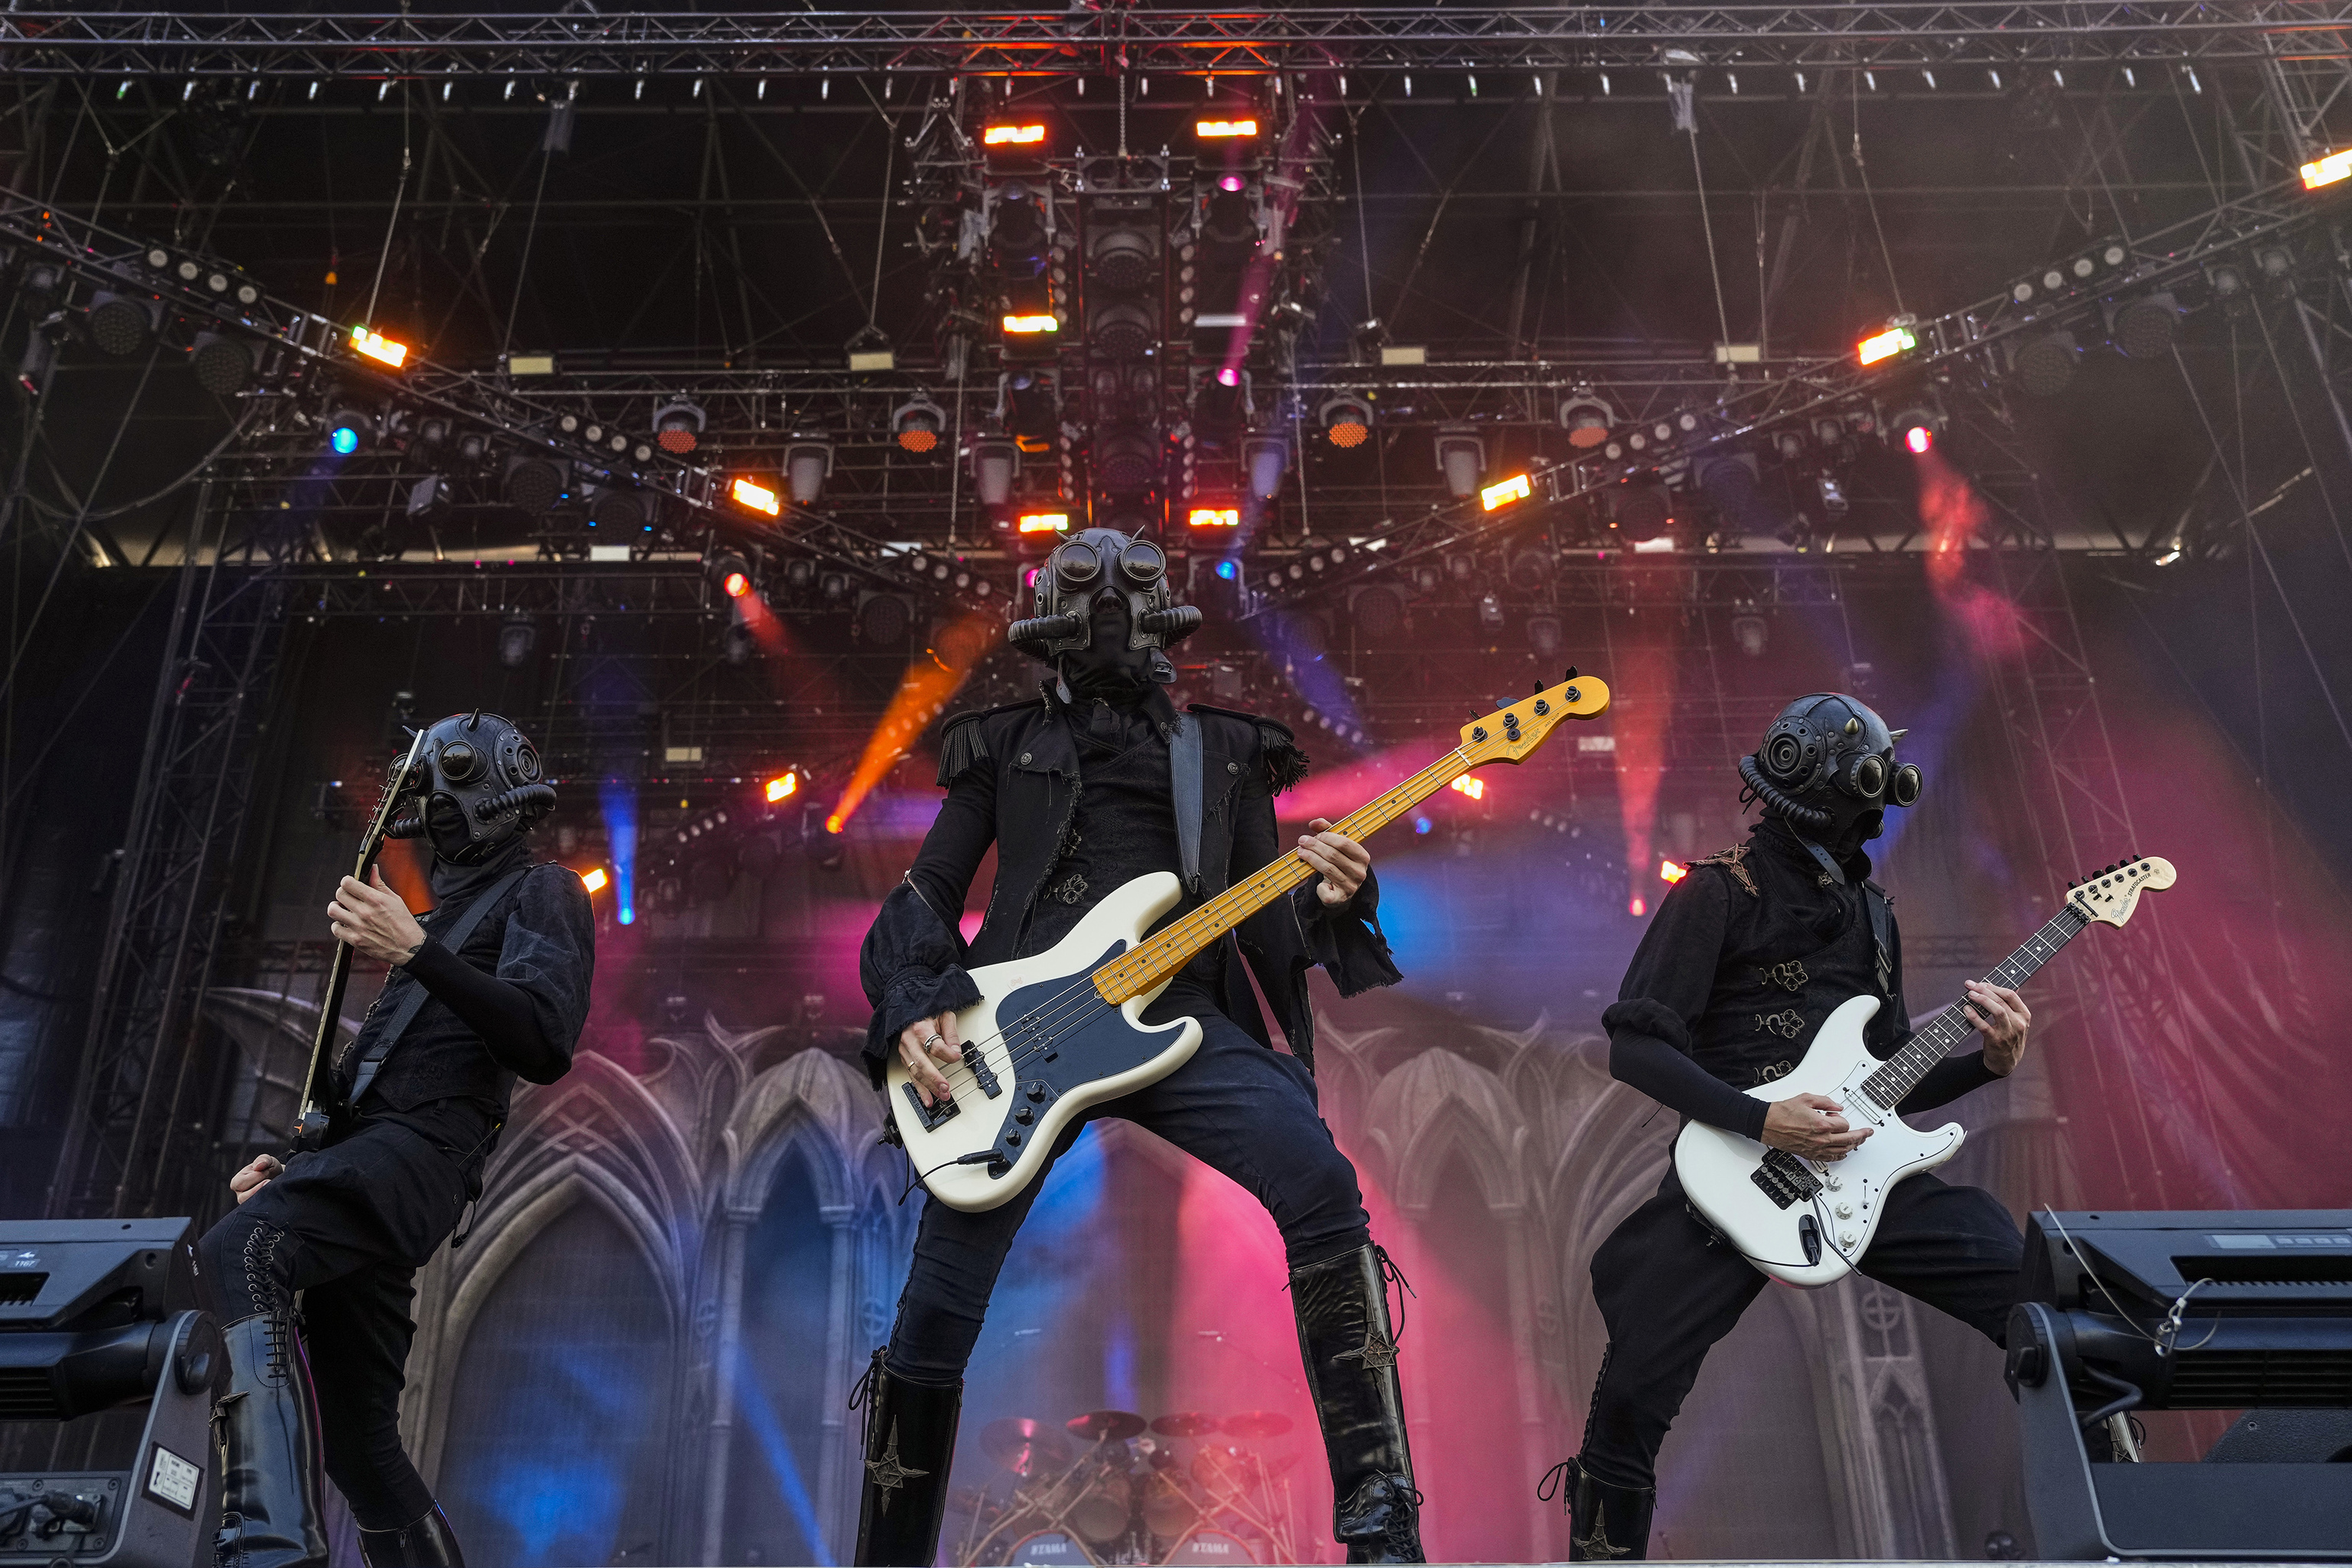 Miembros del grupo musical sueco Ghost actúan en el escenario durante su concierto en el marco del Primavera Sound.